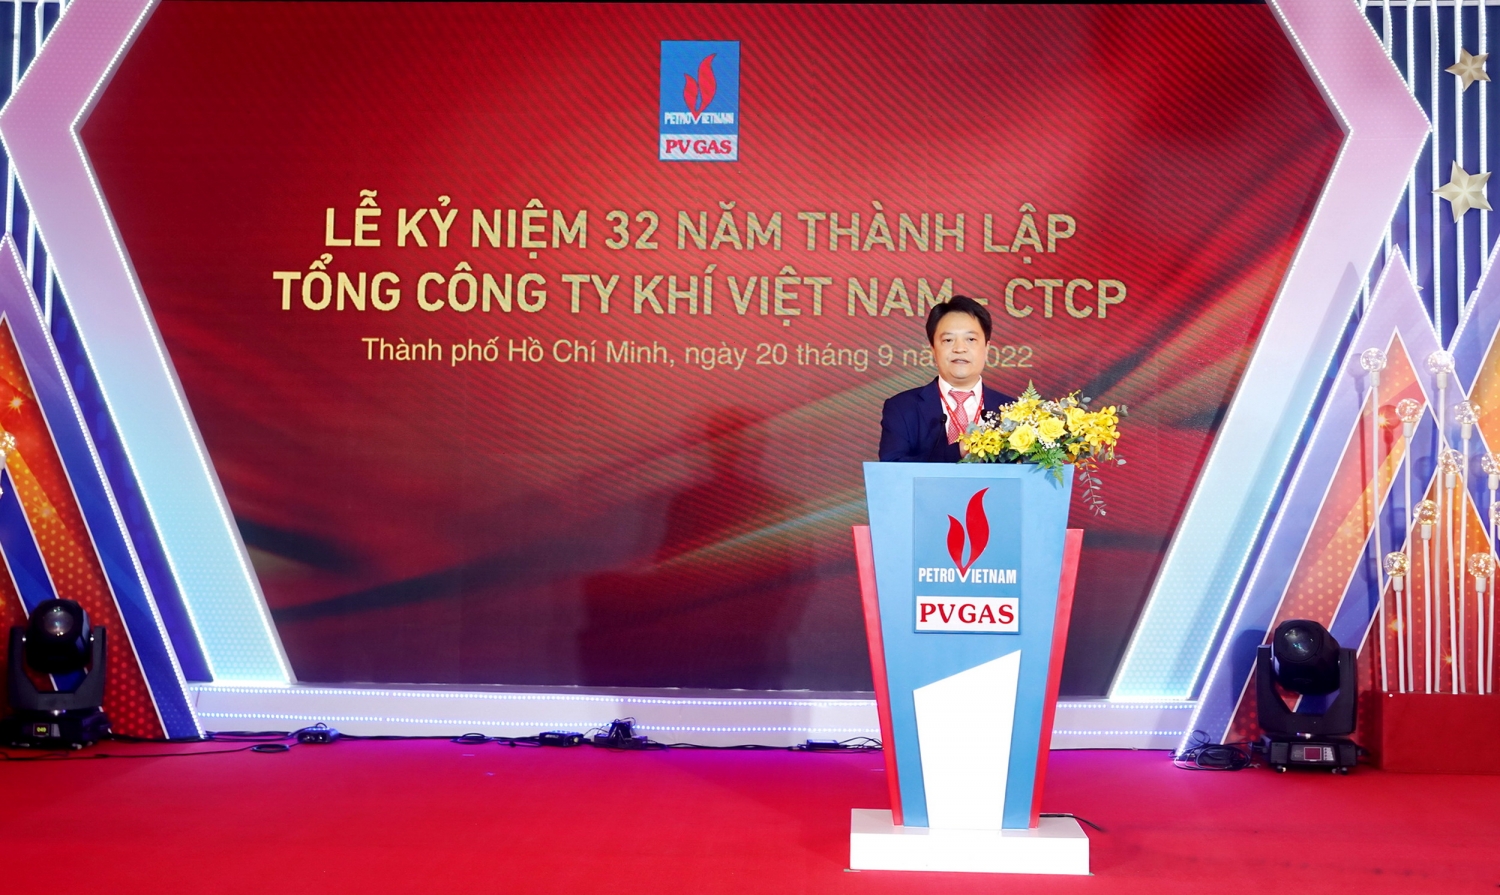 Đồng chí Hoàng Văn Quang - Phó Bí thư Đảng ủy, Tổng giám đốc PV GAS phát biểu chào mừng tuổi 32 đầy nhiệt huyết của PV GAS